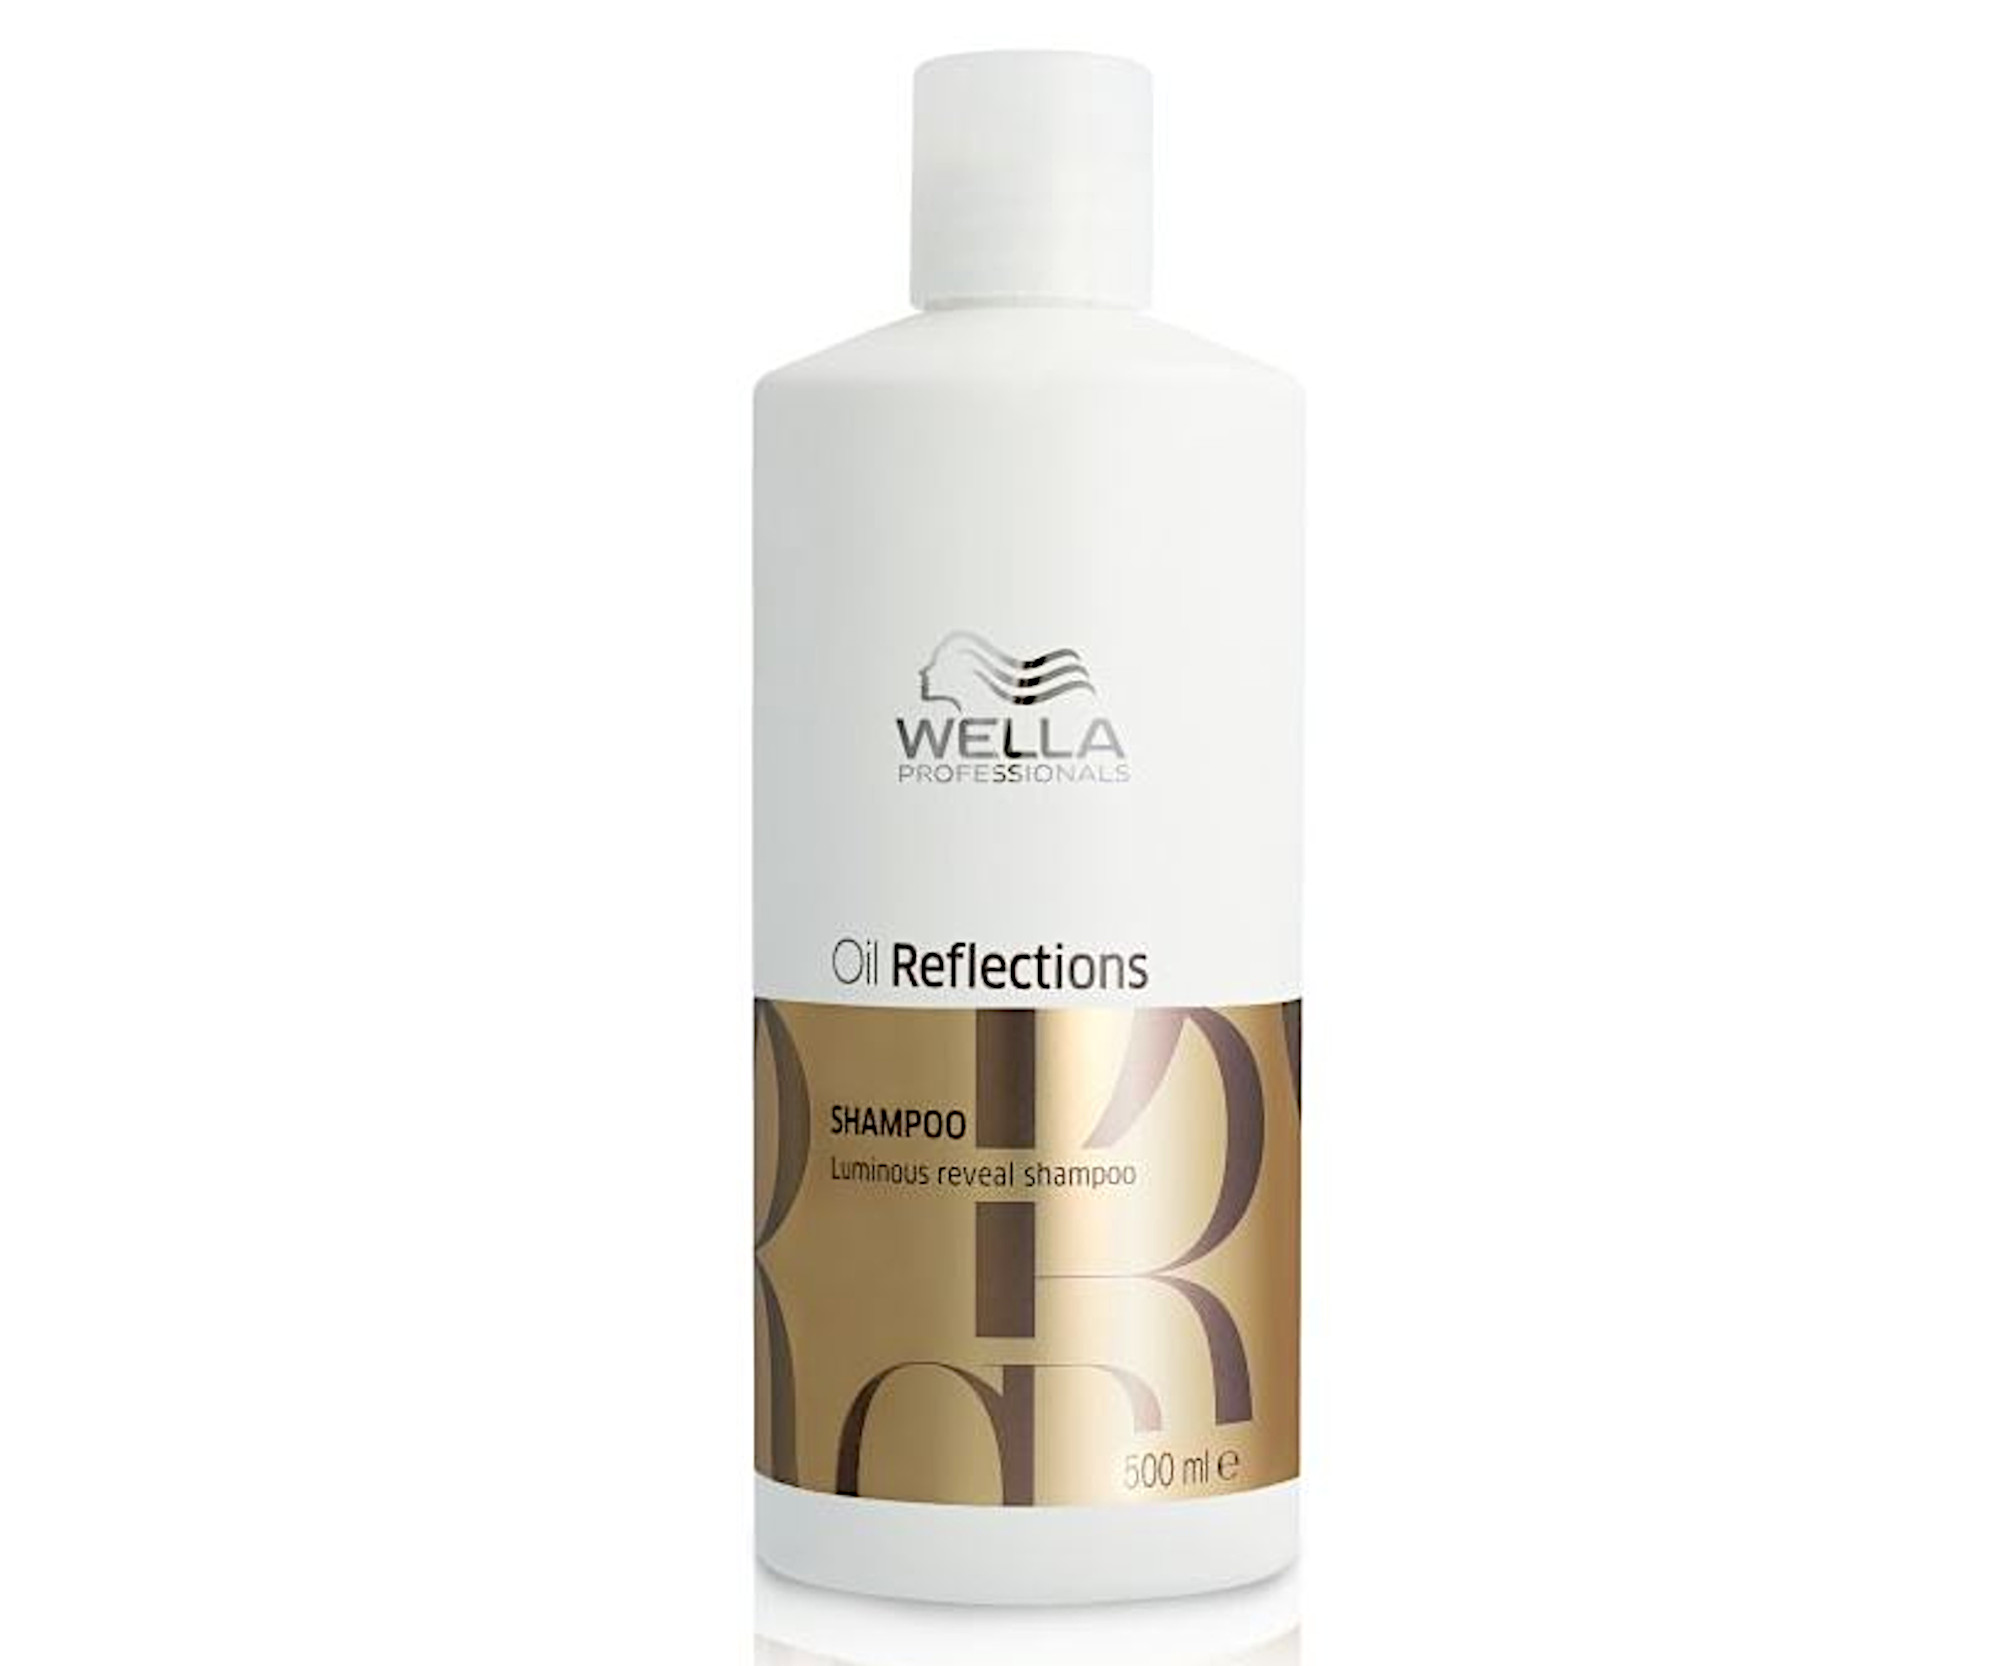 Jemný hydratační šampon pro lesk vlasů Wella Professionals Oil Reflections Luminous Reveal - 500 ml (99350169124) + dárek zdarma